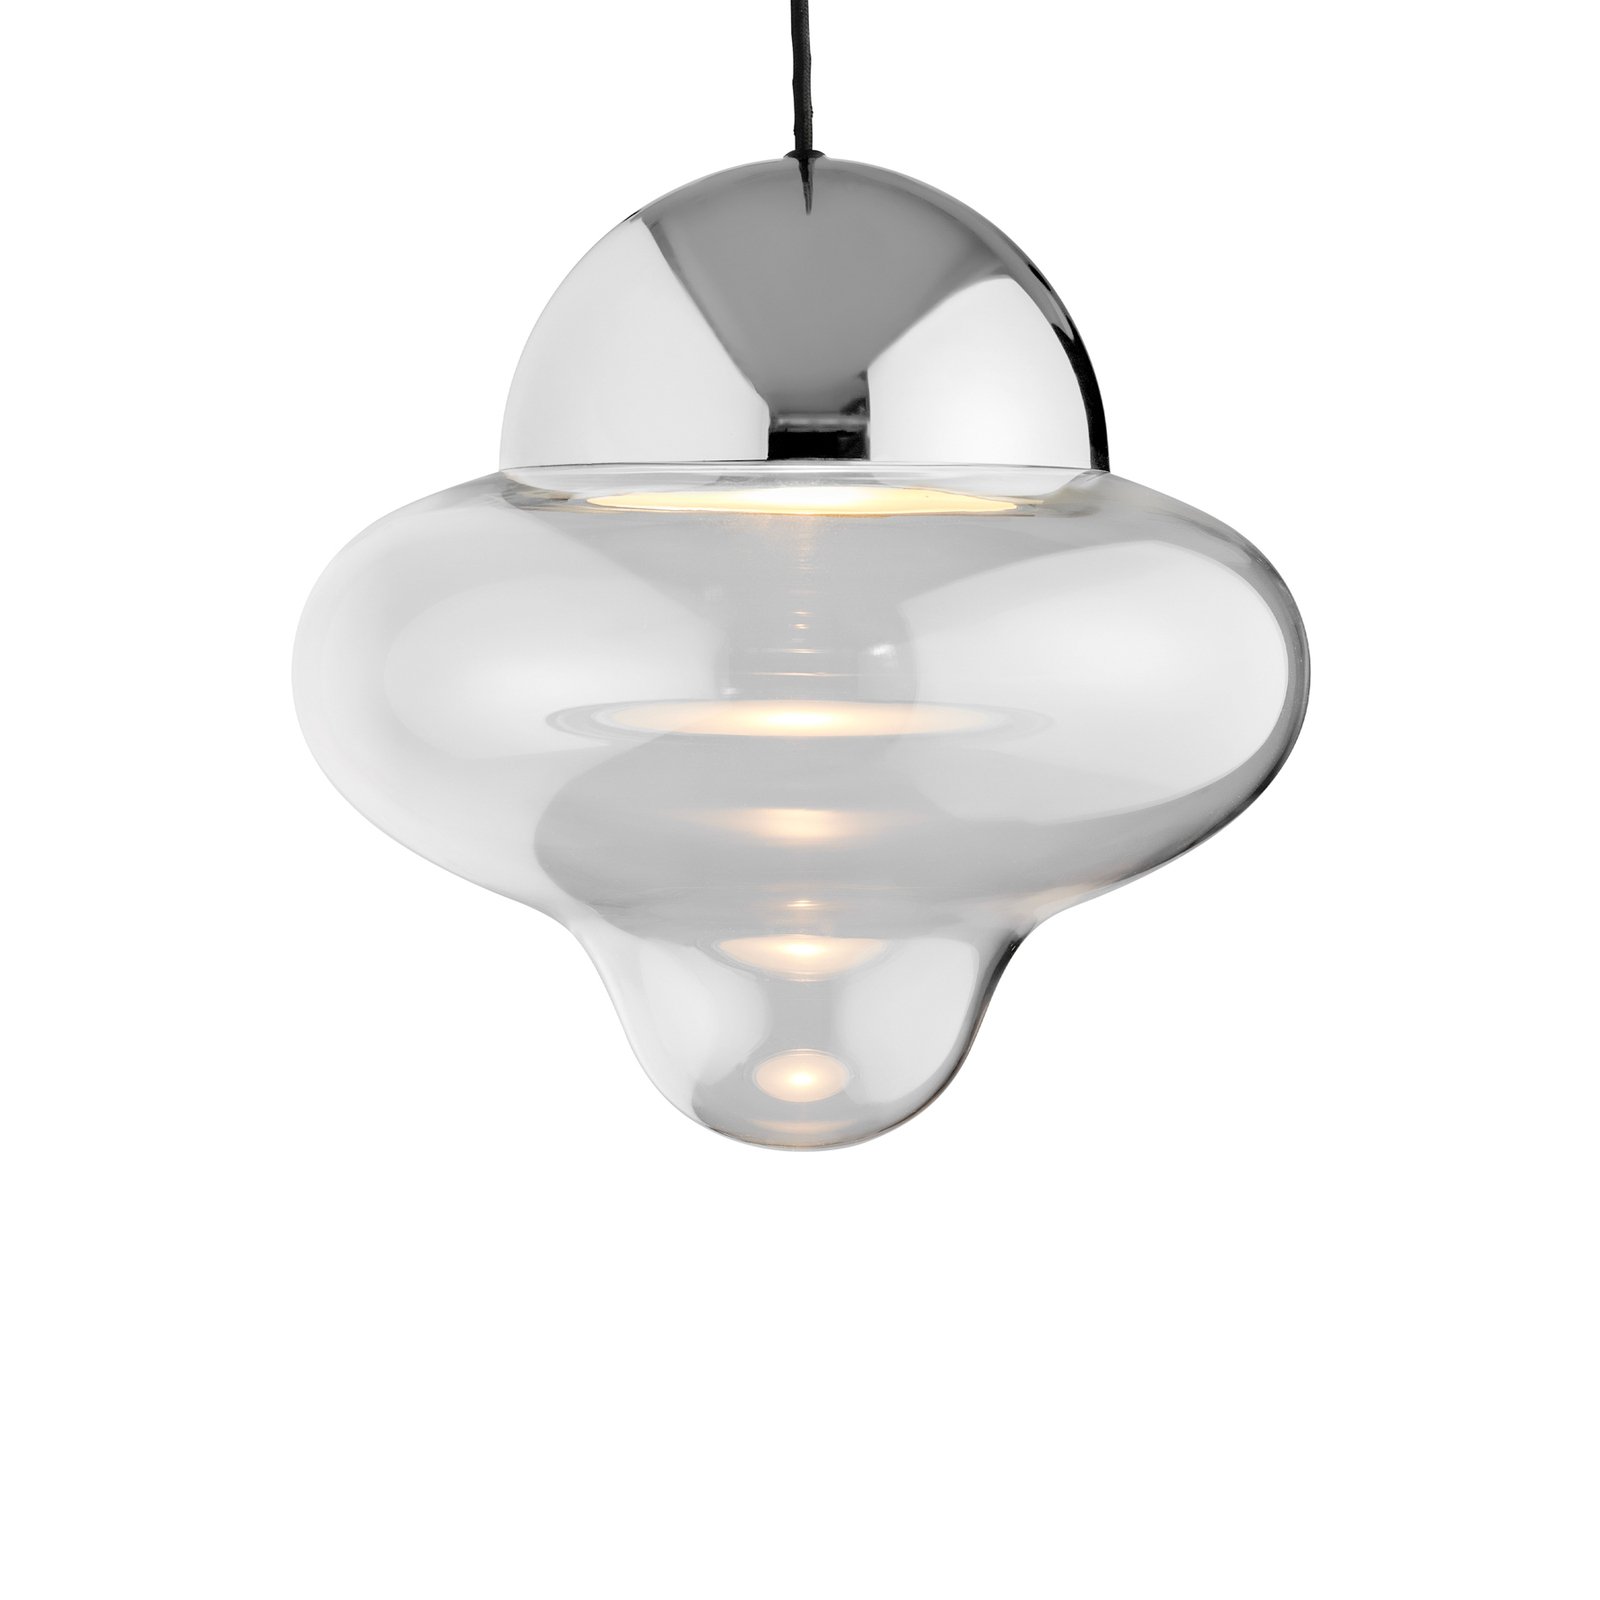 LED pendant light Nutty XL, clear / chrome-coloured, Ø 30 cm, glass